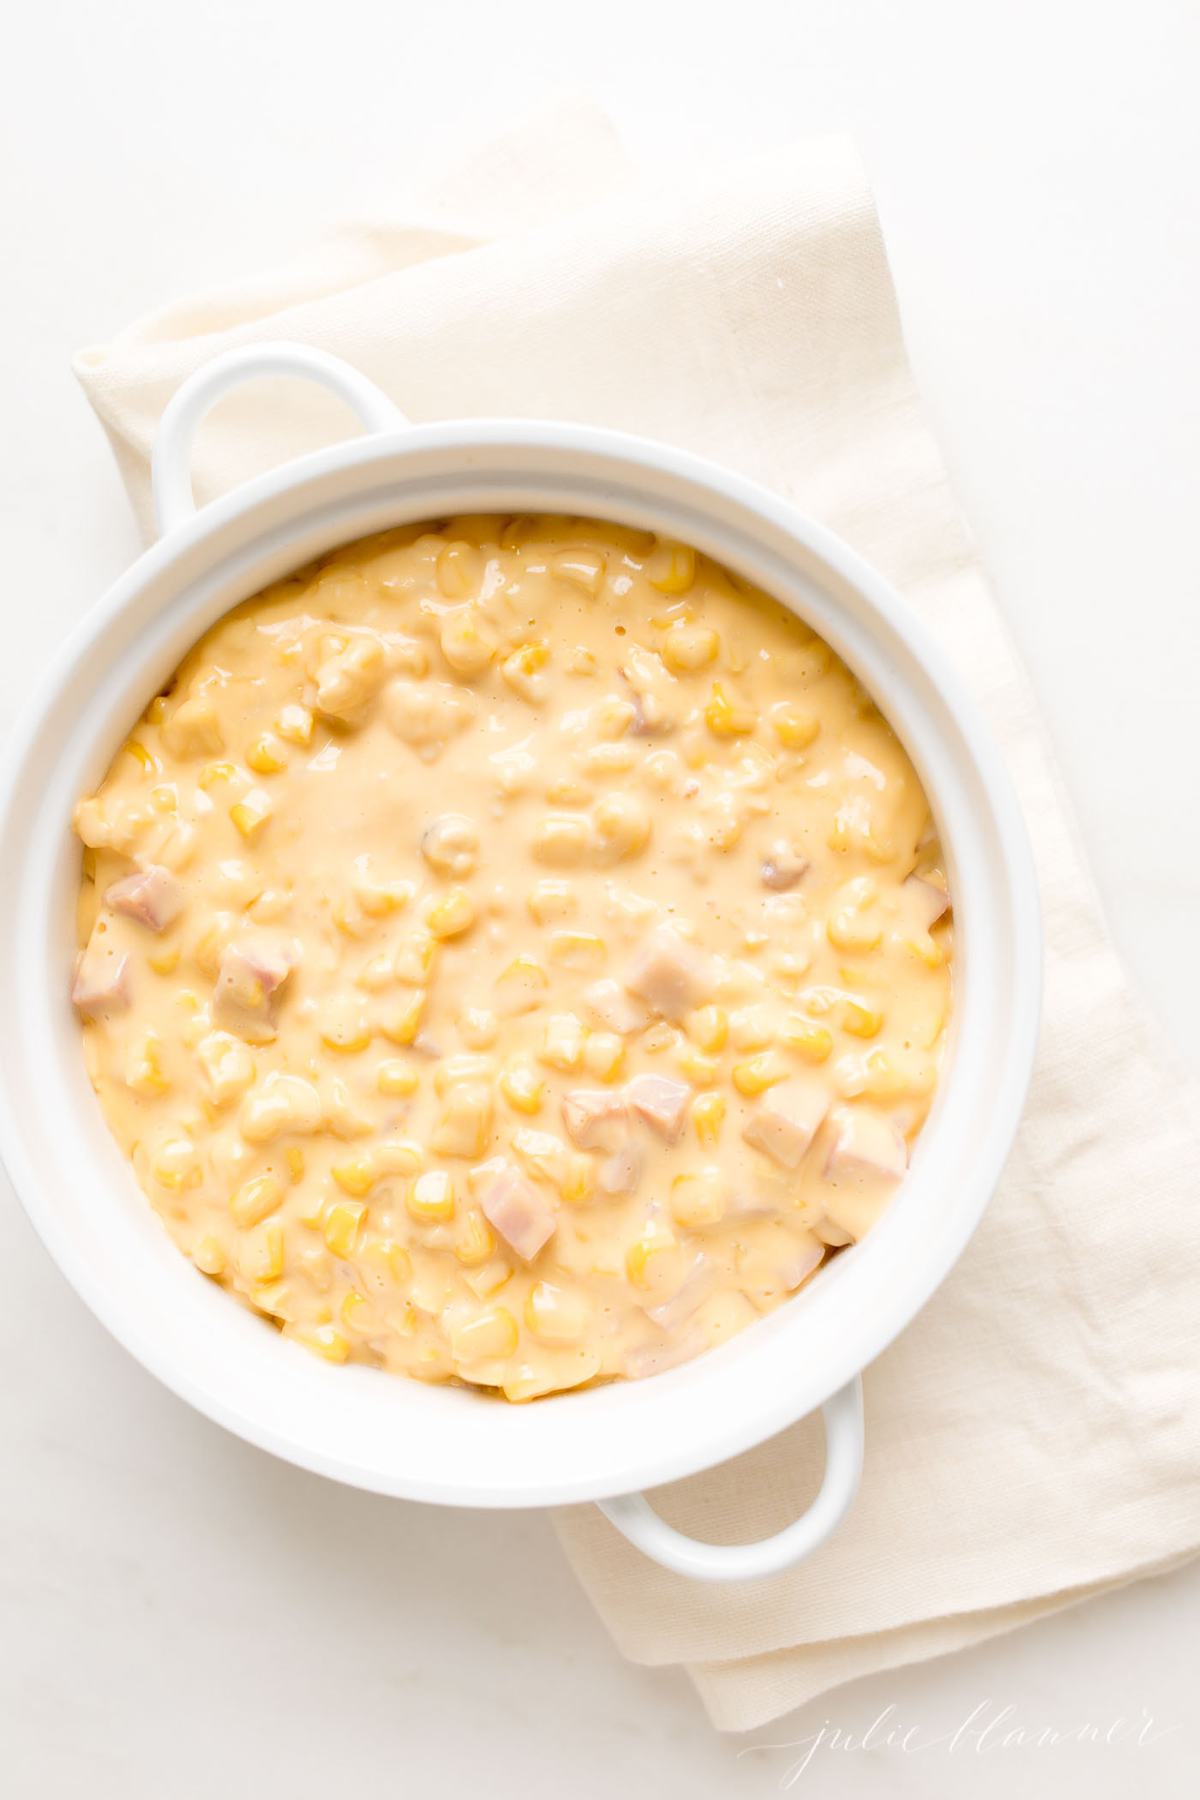 corn dip recipe in a white dish